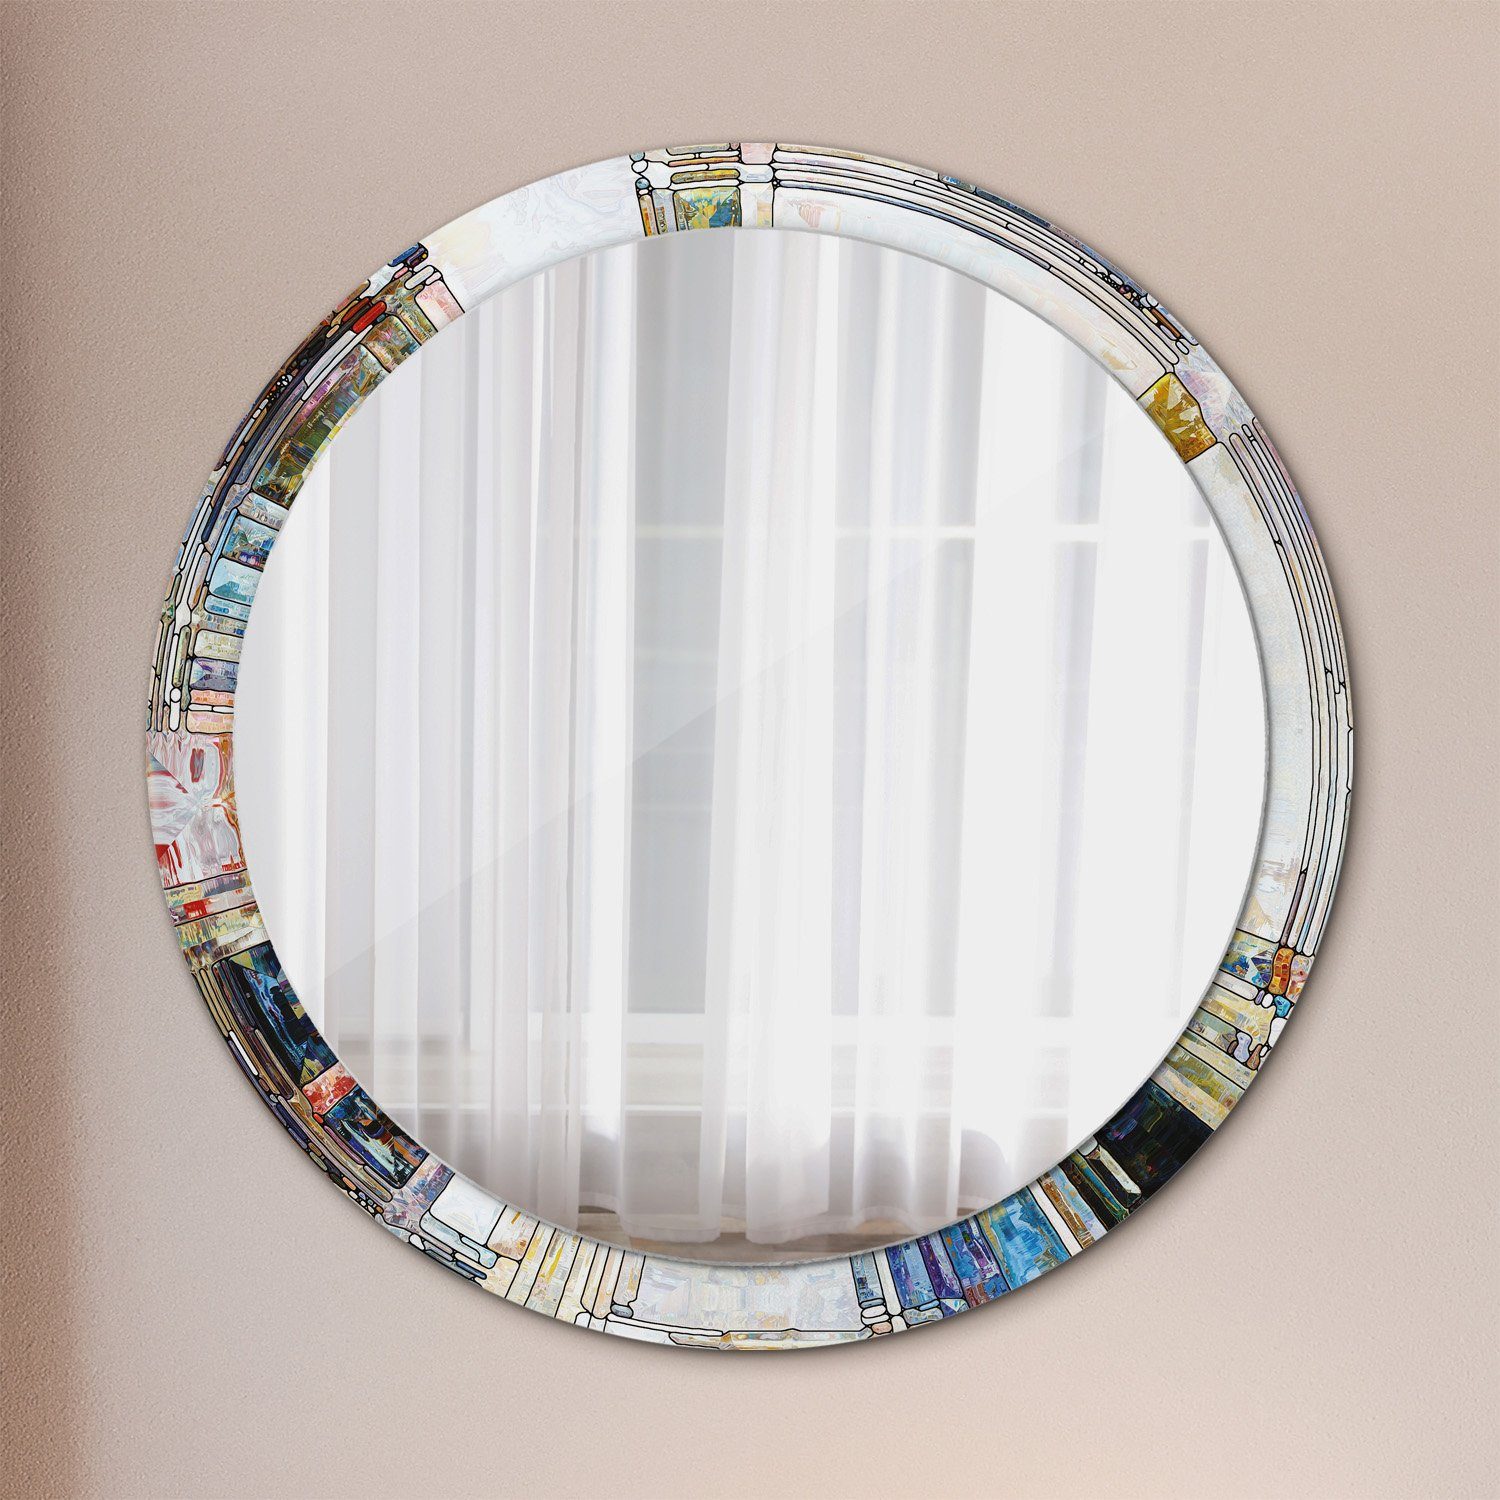 Tulup Wandspiegel Runder Deko Spiegel mit Modernem Aufdruck Rundspiegel Rund: Ø100cm, Runder Spiegel mit Modernem Aufdruck Gebeizt Glas